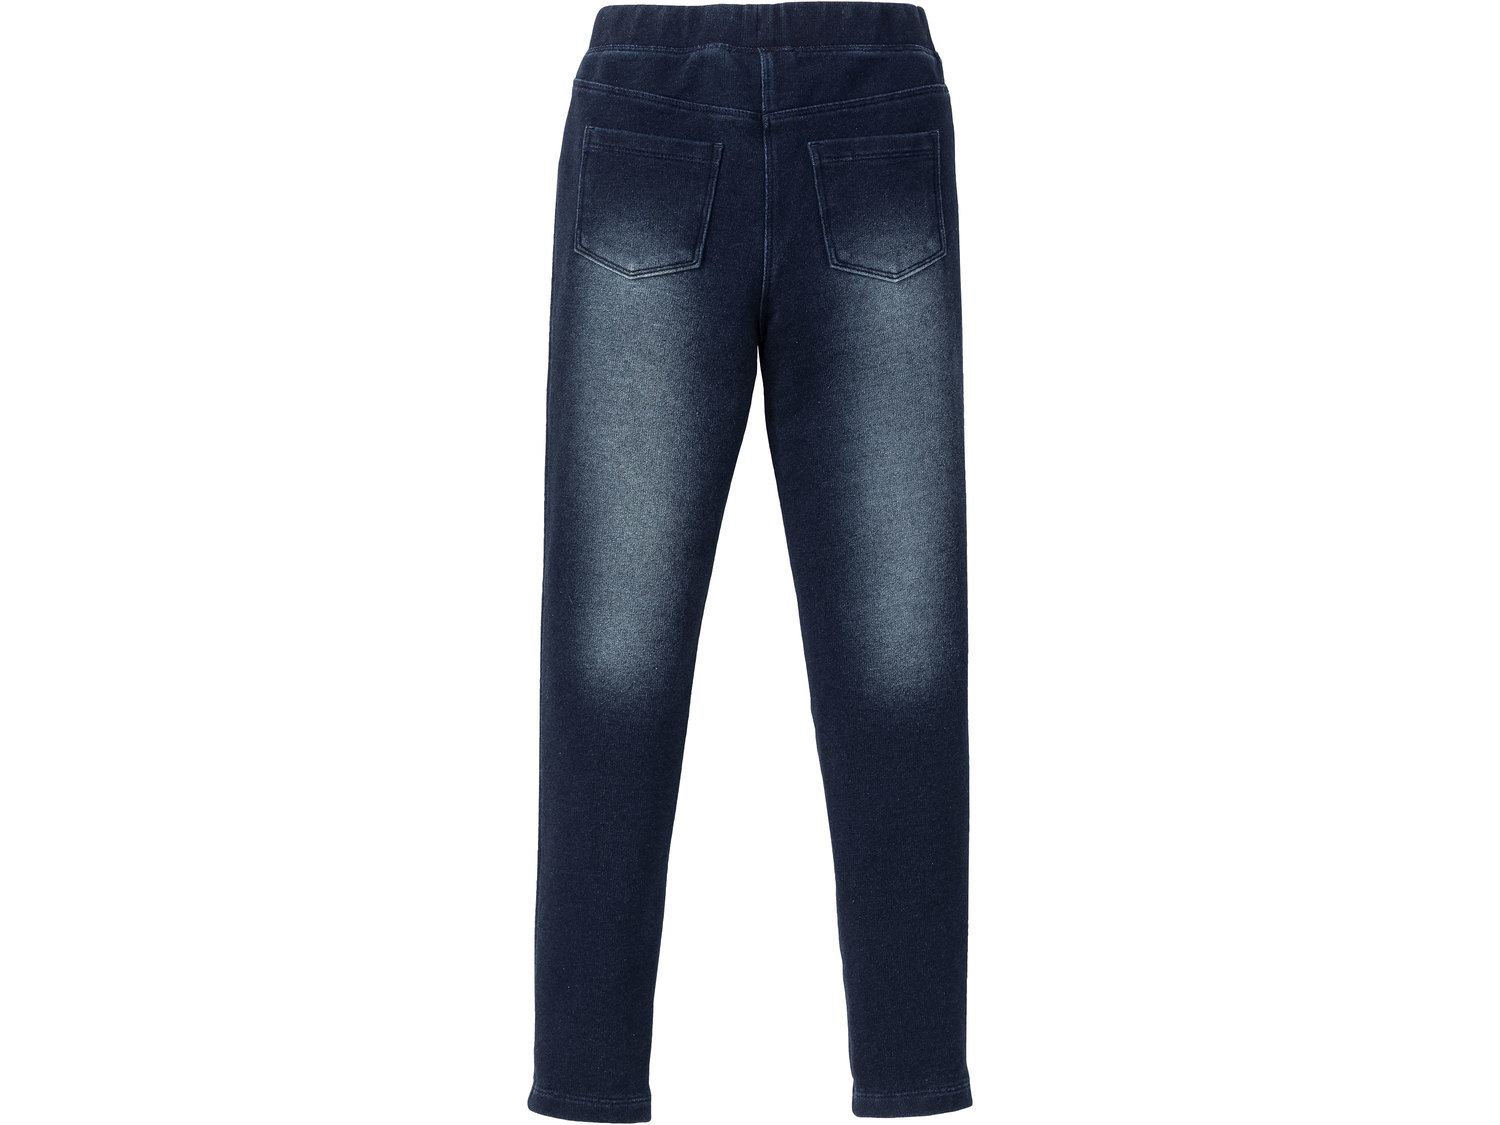 Jegginsy dziewczęce Pepperts, cena 24,99 PLN 
- wygląd jeans&oacute;w, wygoda ...